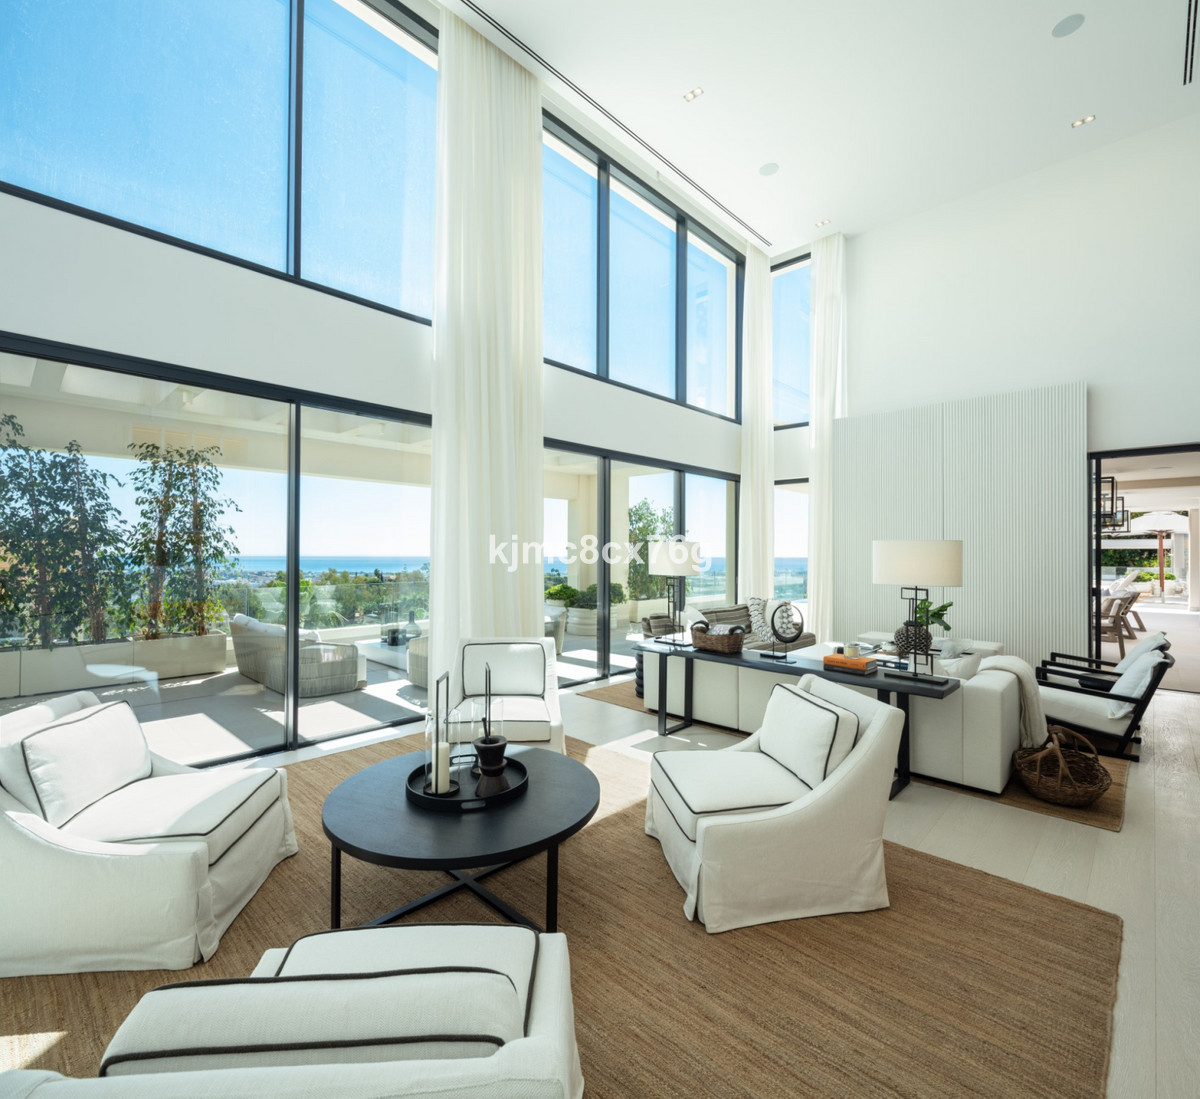 6 bed Property For Sale in La Quinta, Costa del Sol - thumb 6